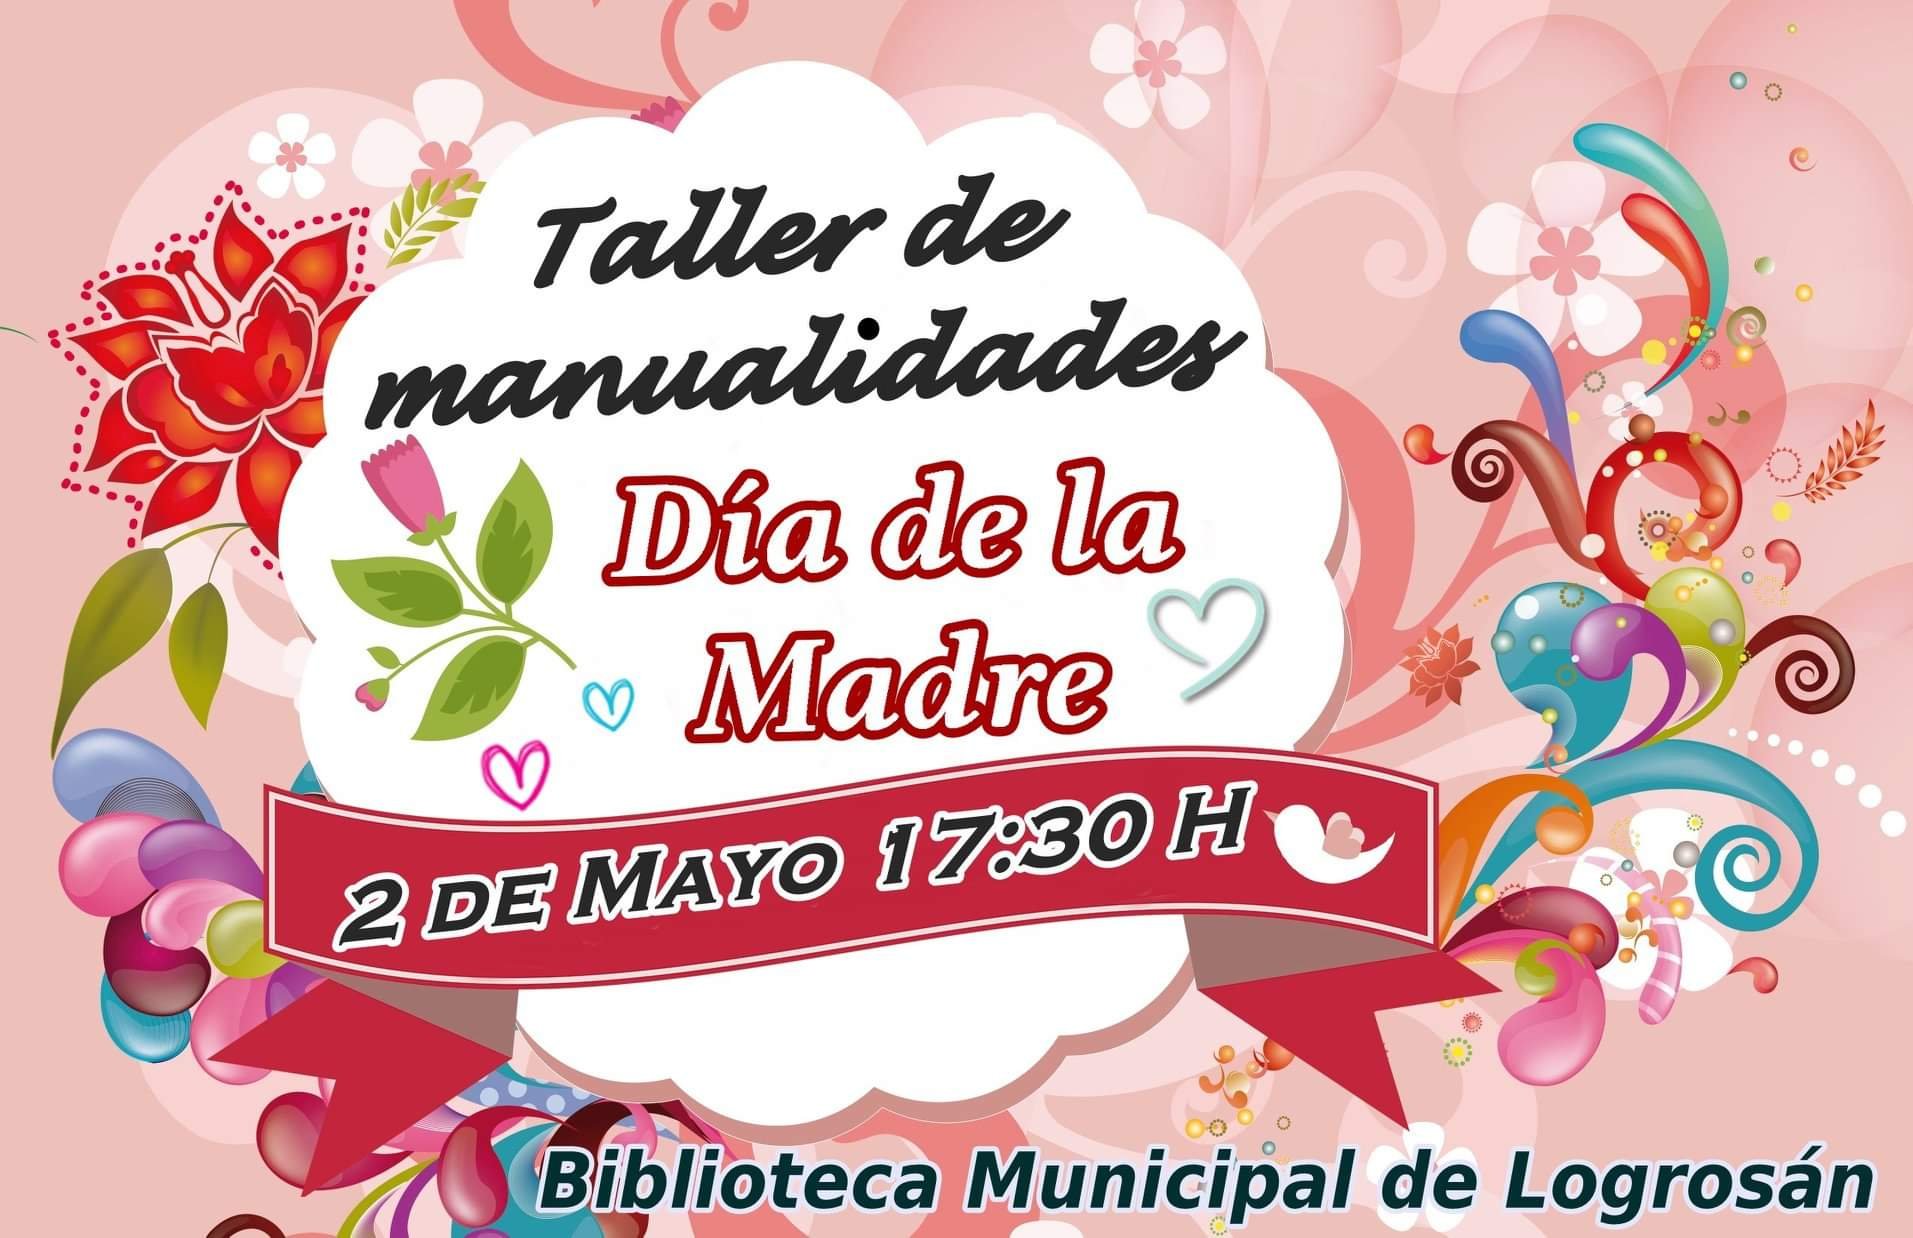 Taller de manualidades del Día de la Madre 2019 - Logrosán (Cáceres)